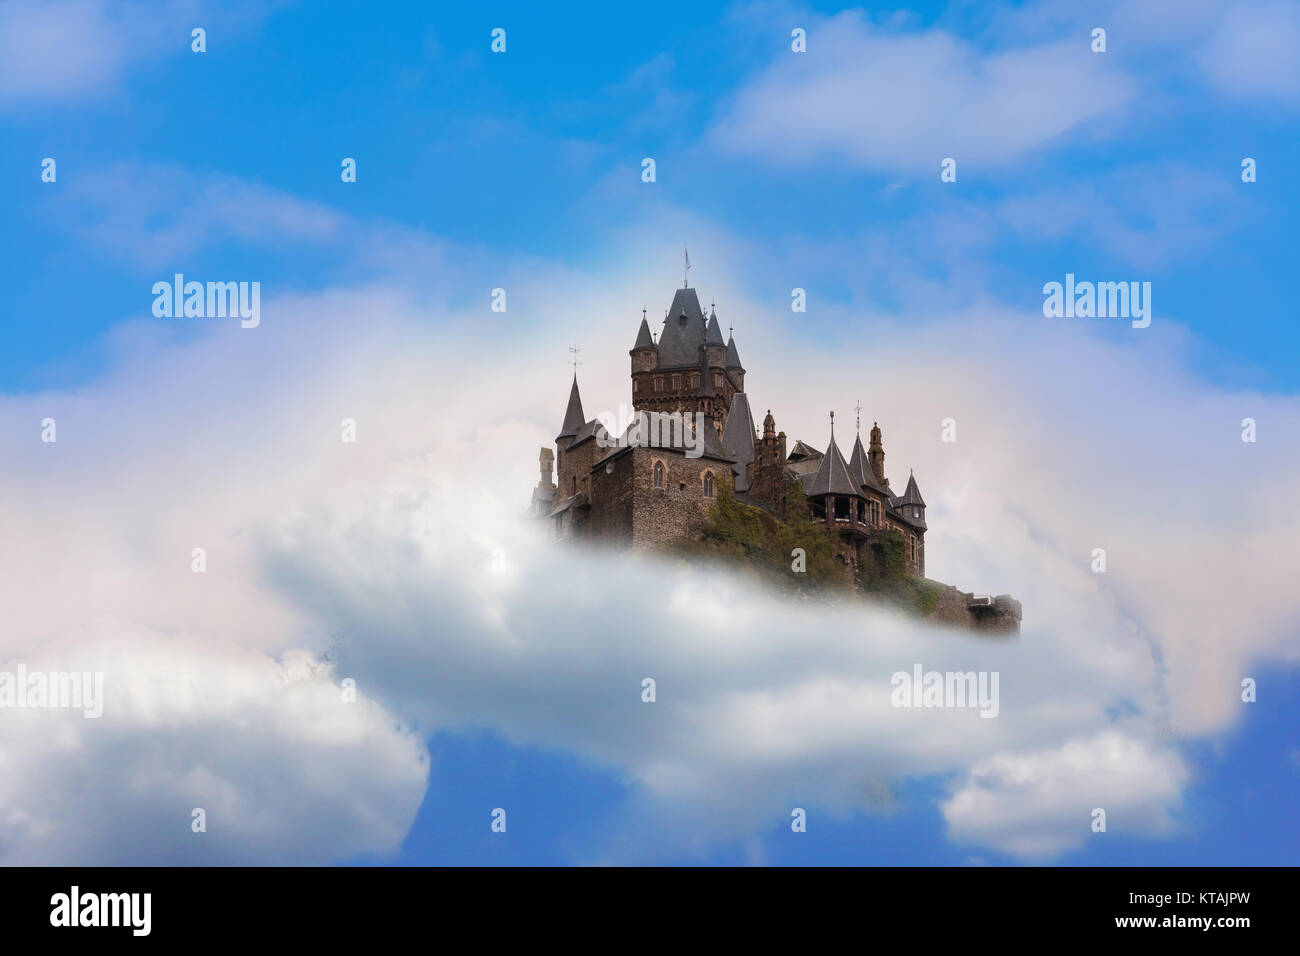 Fotomontage der Reichsburg von Cochem. Luftschloss Fantasy Schloss in den Wolken. Stock Photo